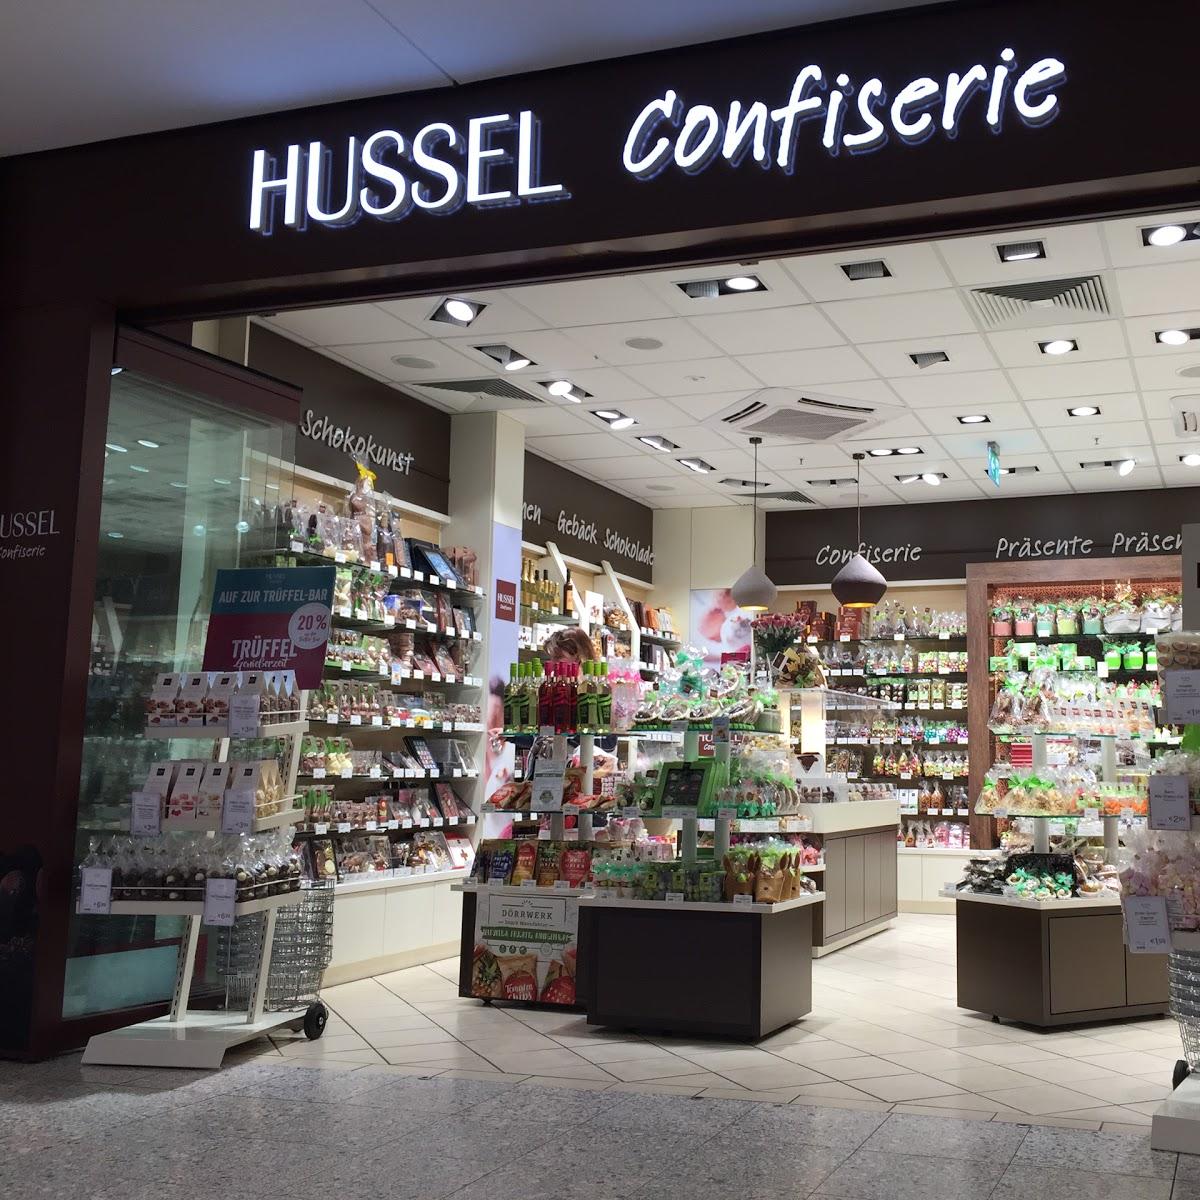 Restaurant "HUSSEL Confiserie" in Kassel